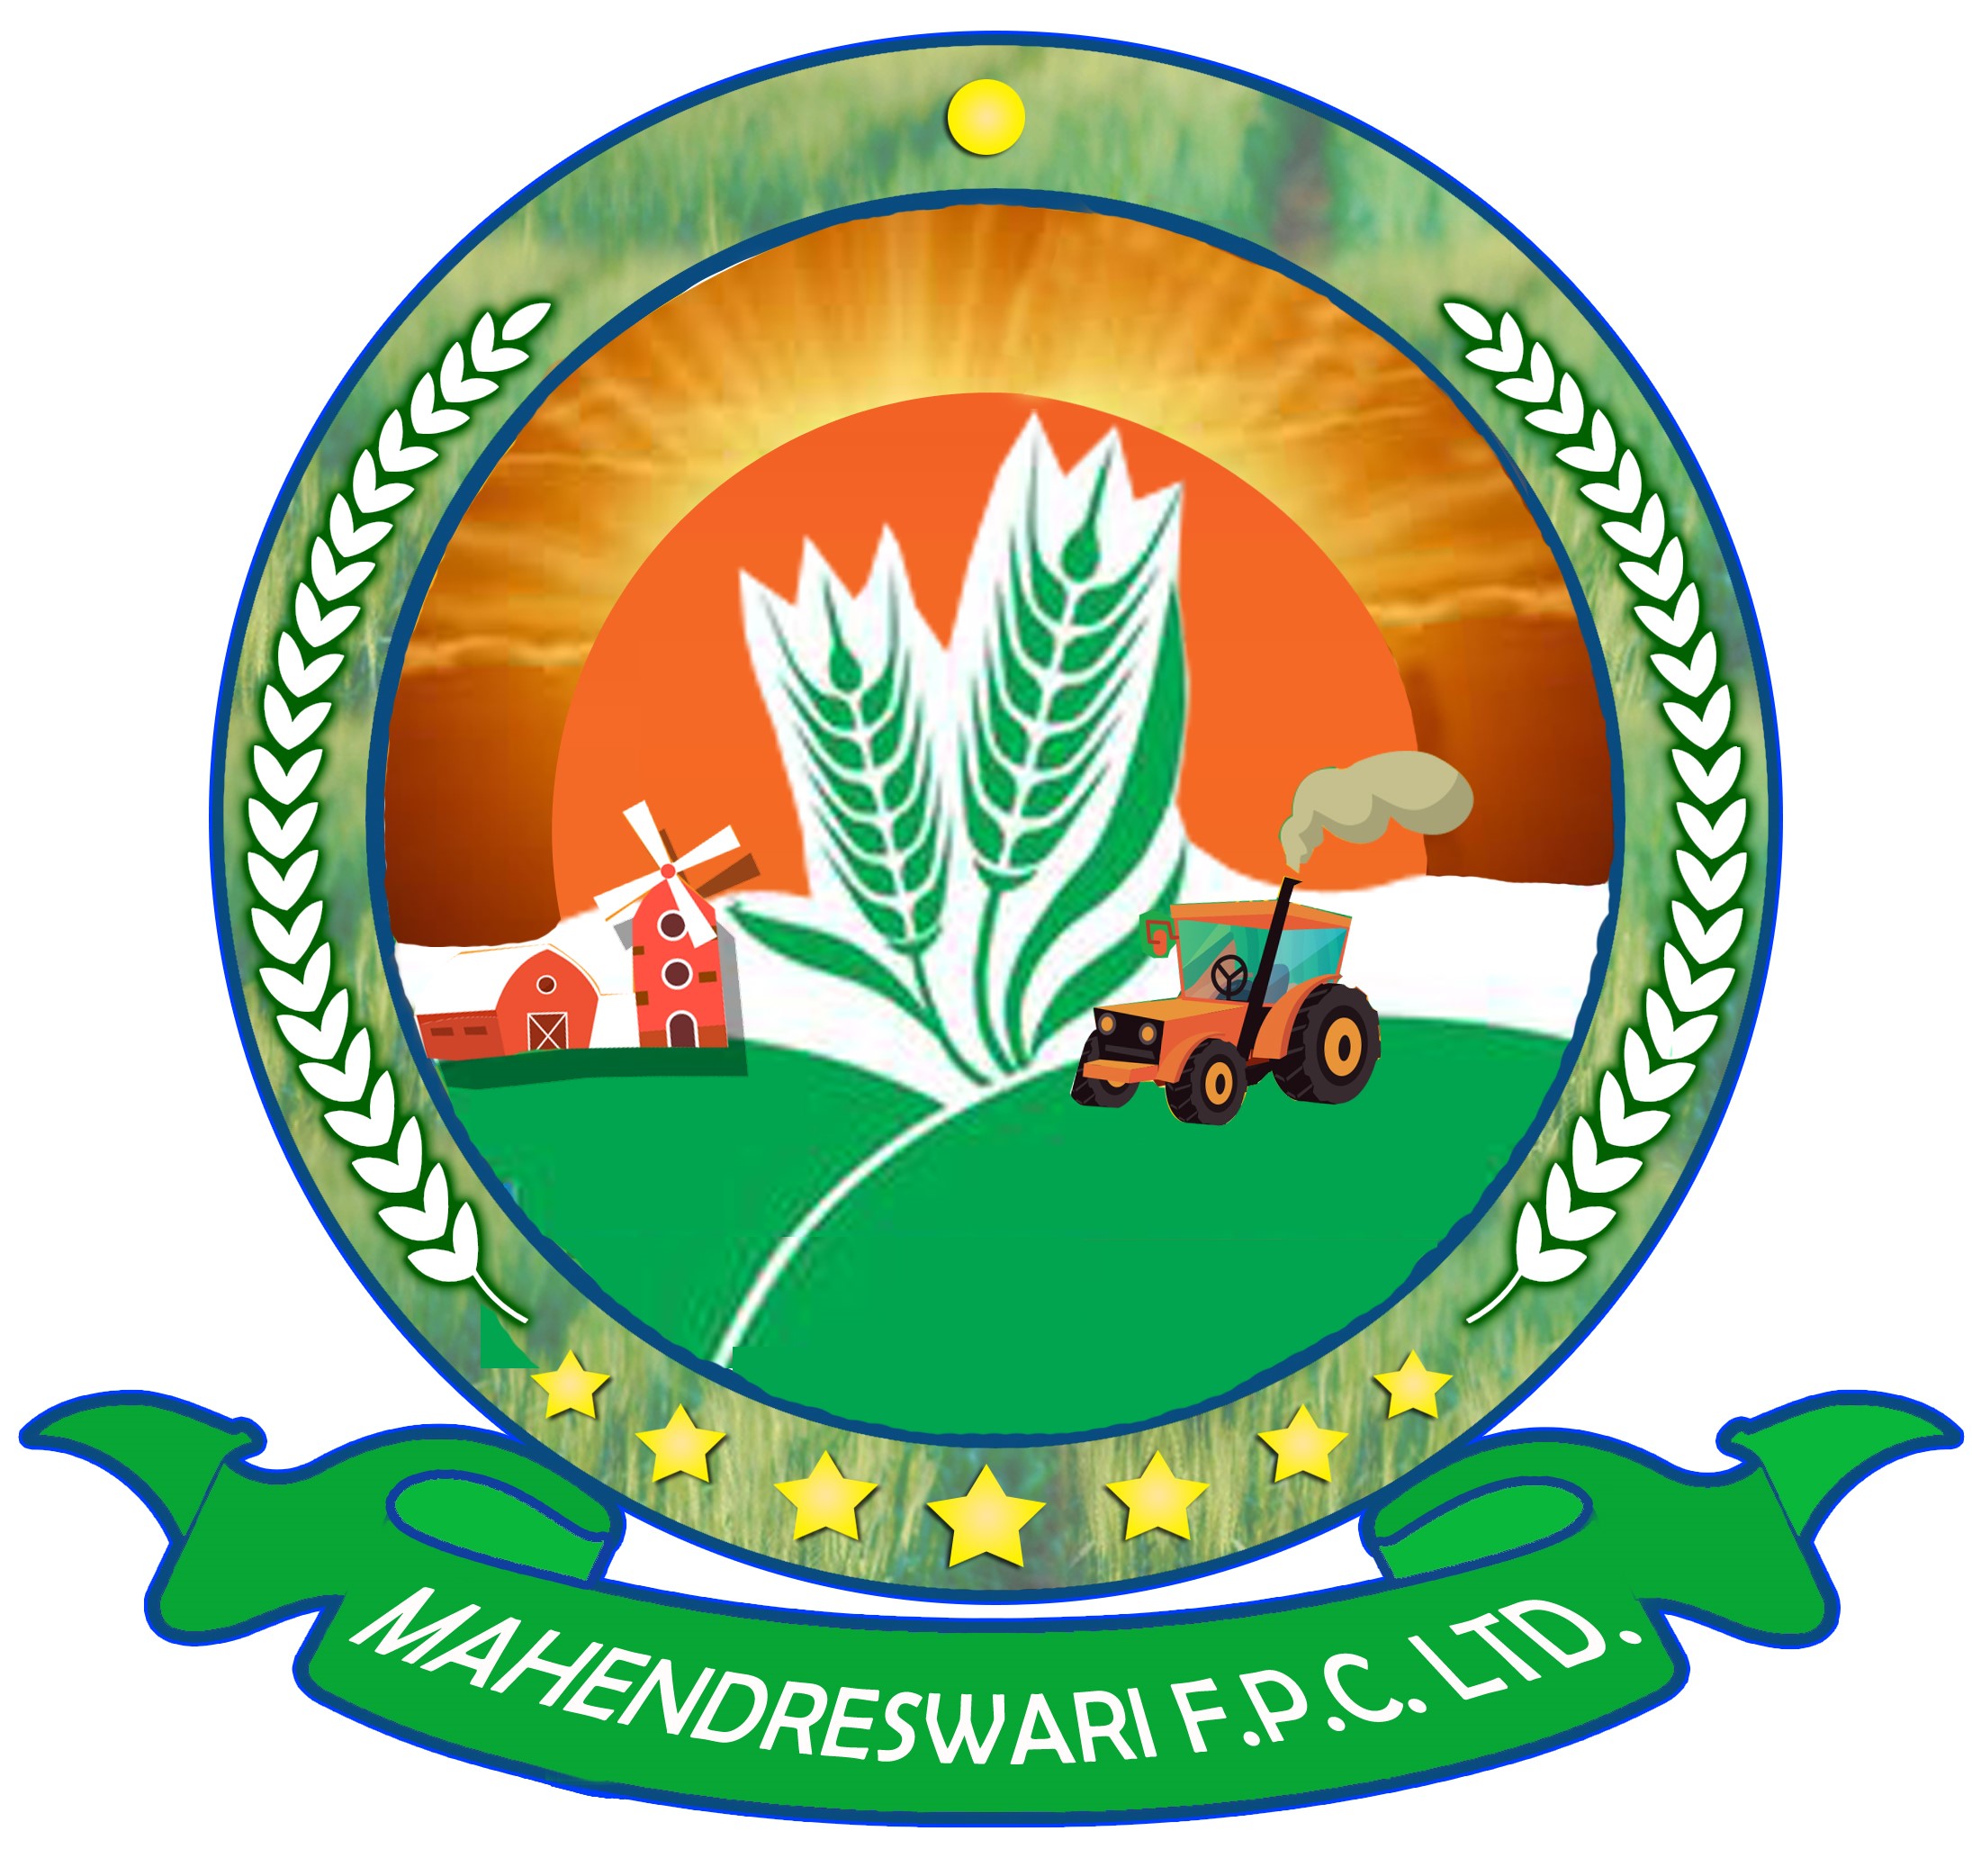 Mahendreswari Farmers Producer Company Limited-logo